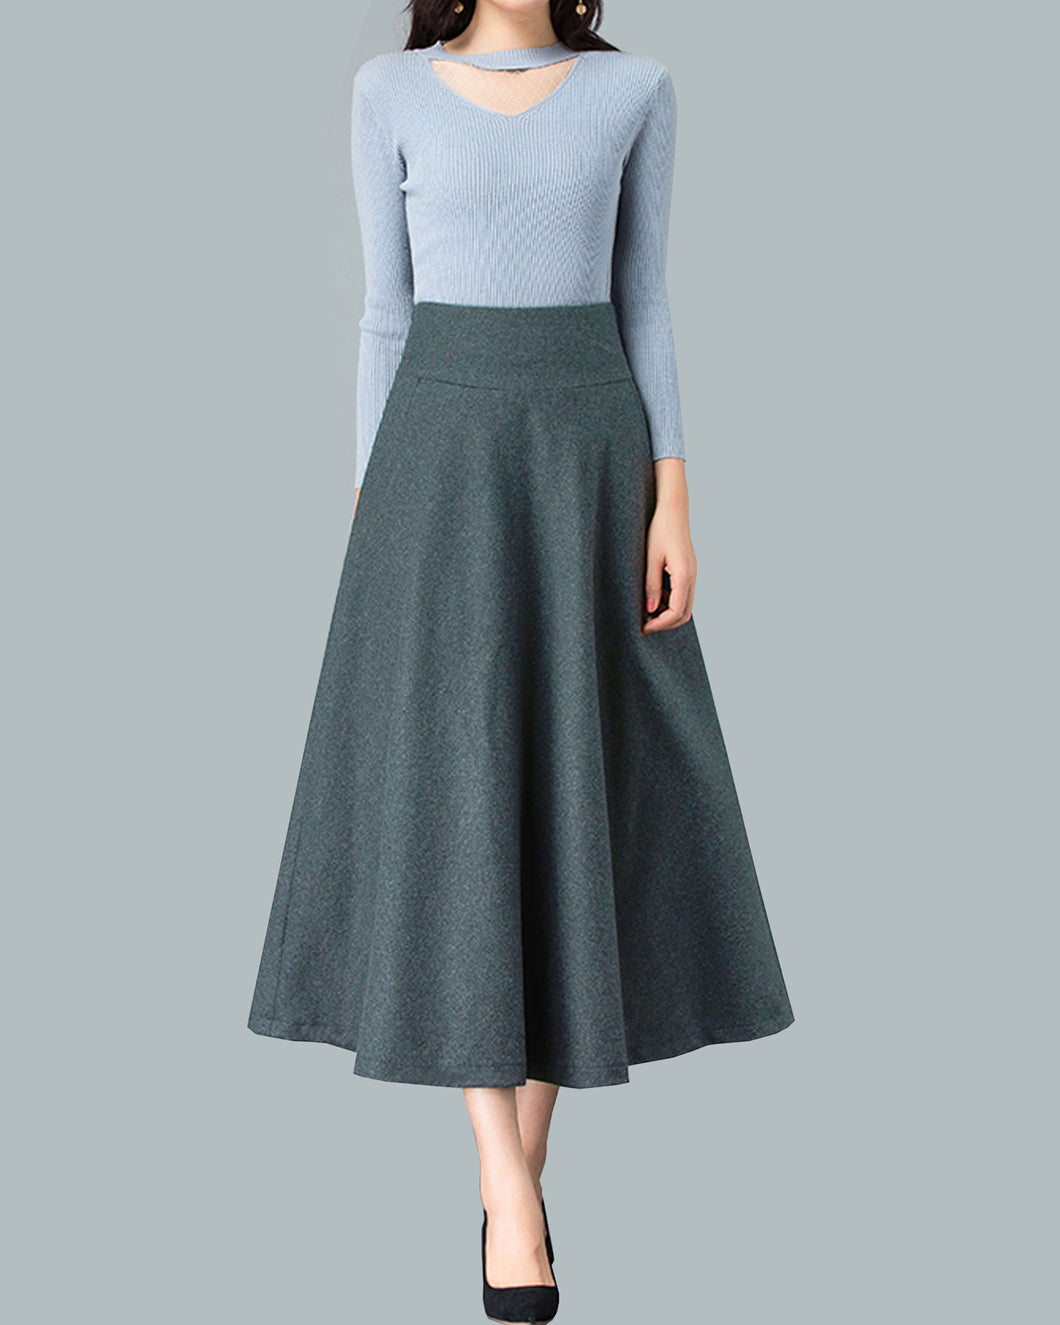 Wool skirt, midi skirt, Winter skirt, dark gray skirt, long skirt, vintage skirt, high waist skirt, flare skirt Q0026